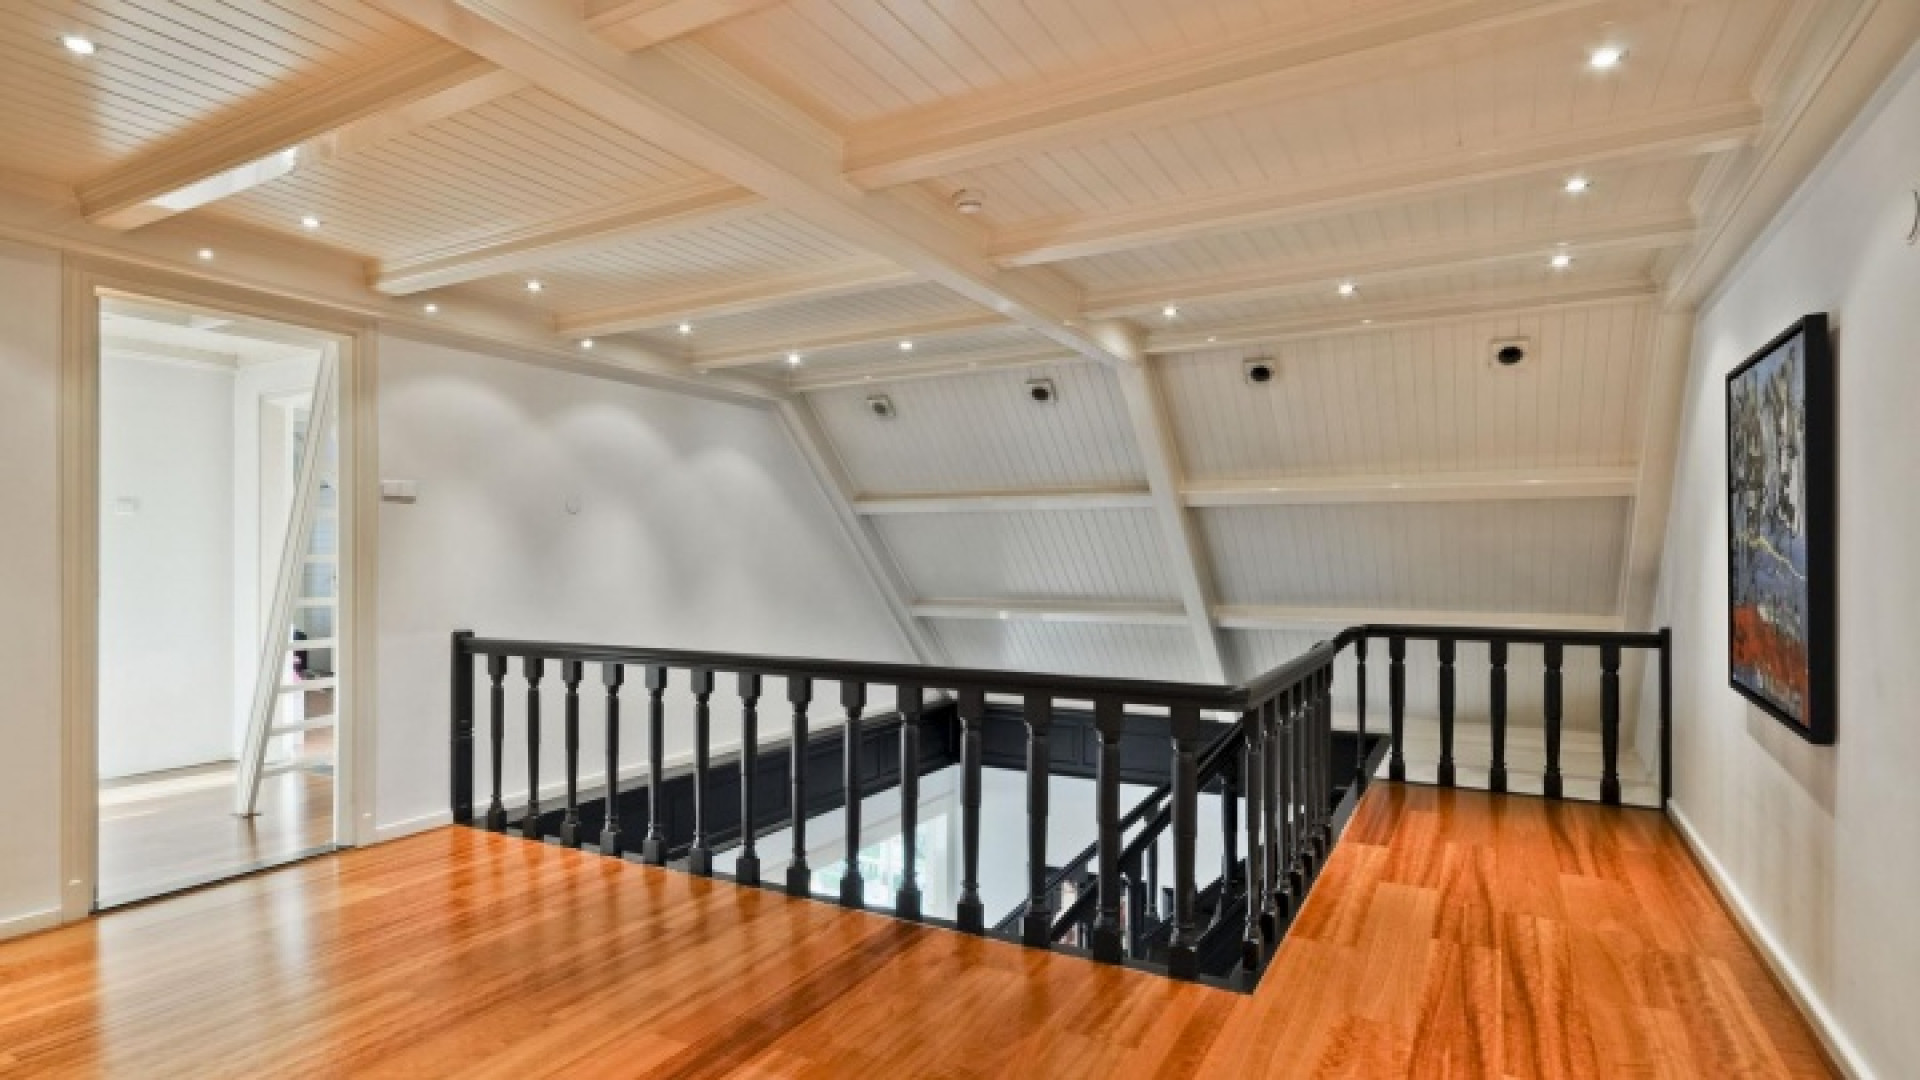 Henny Huisman verkoopt zijn villa zwaar onder de vraagprijs. Zie foto's